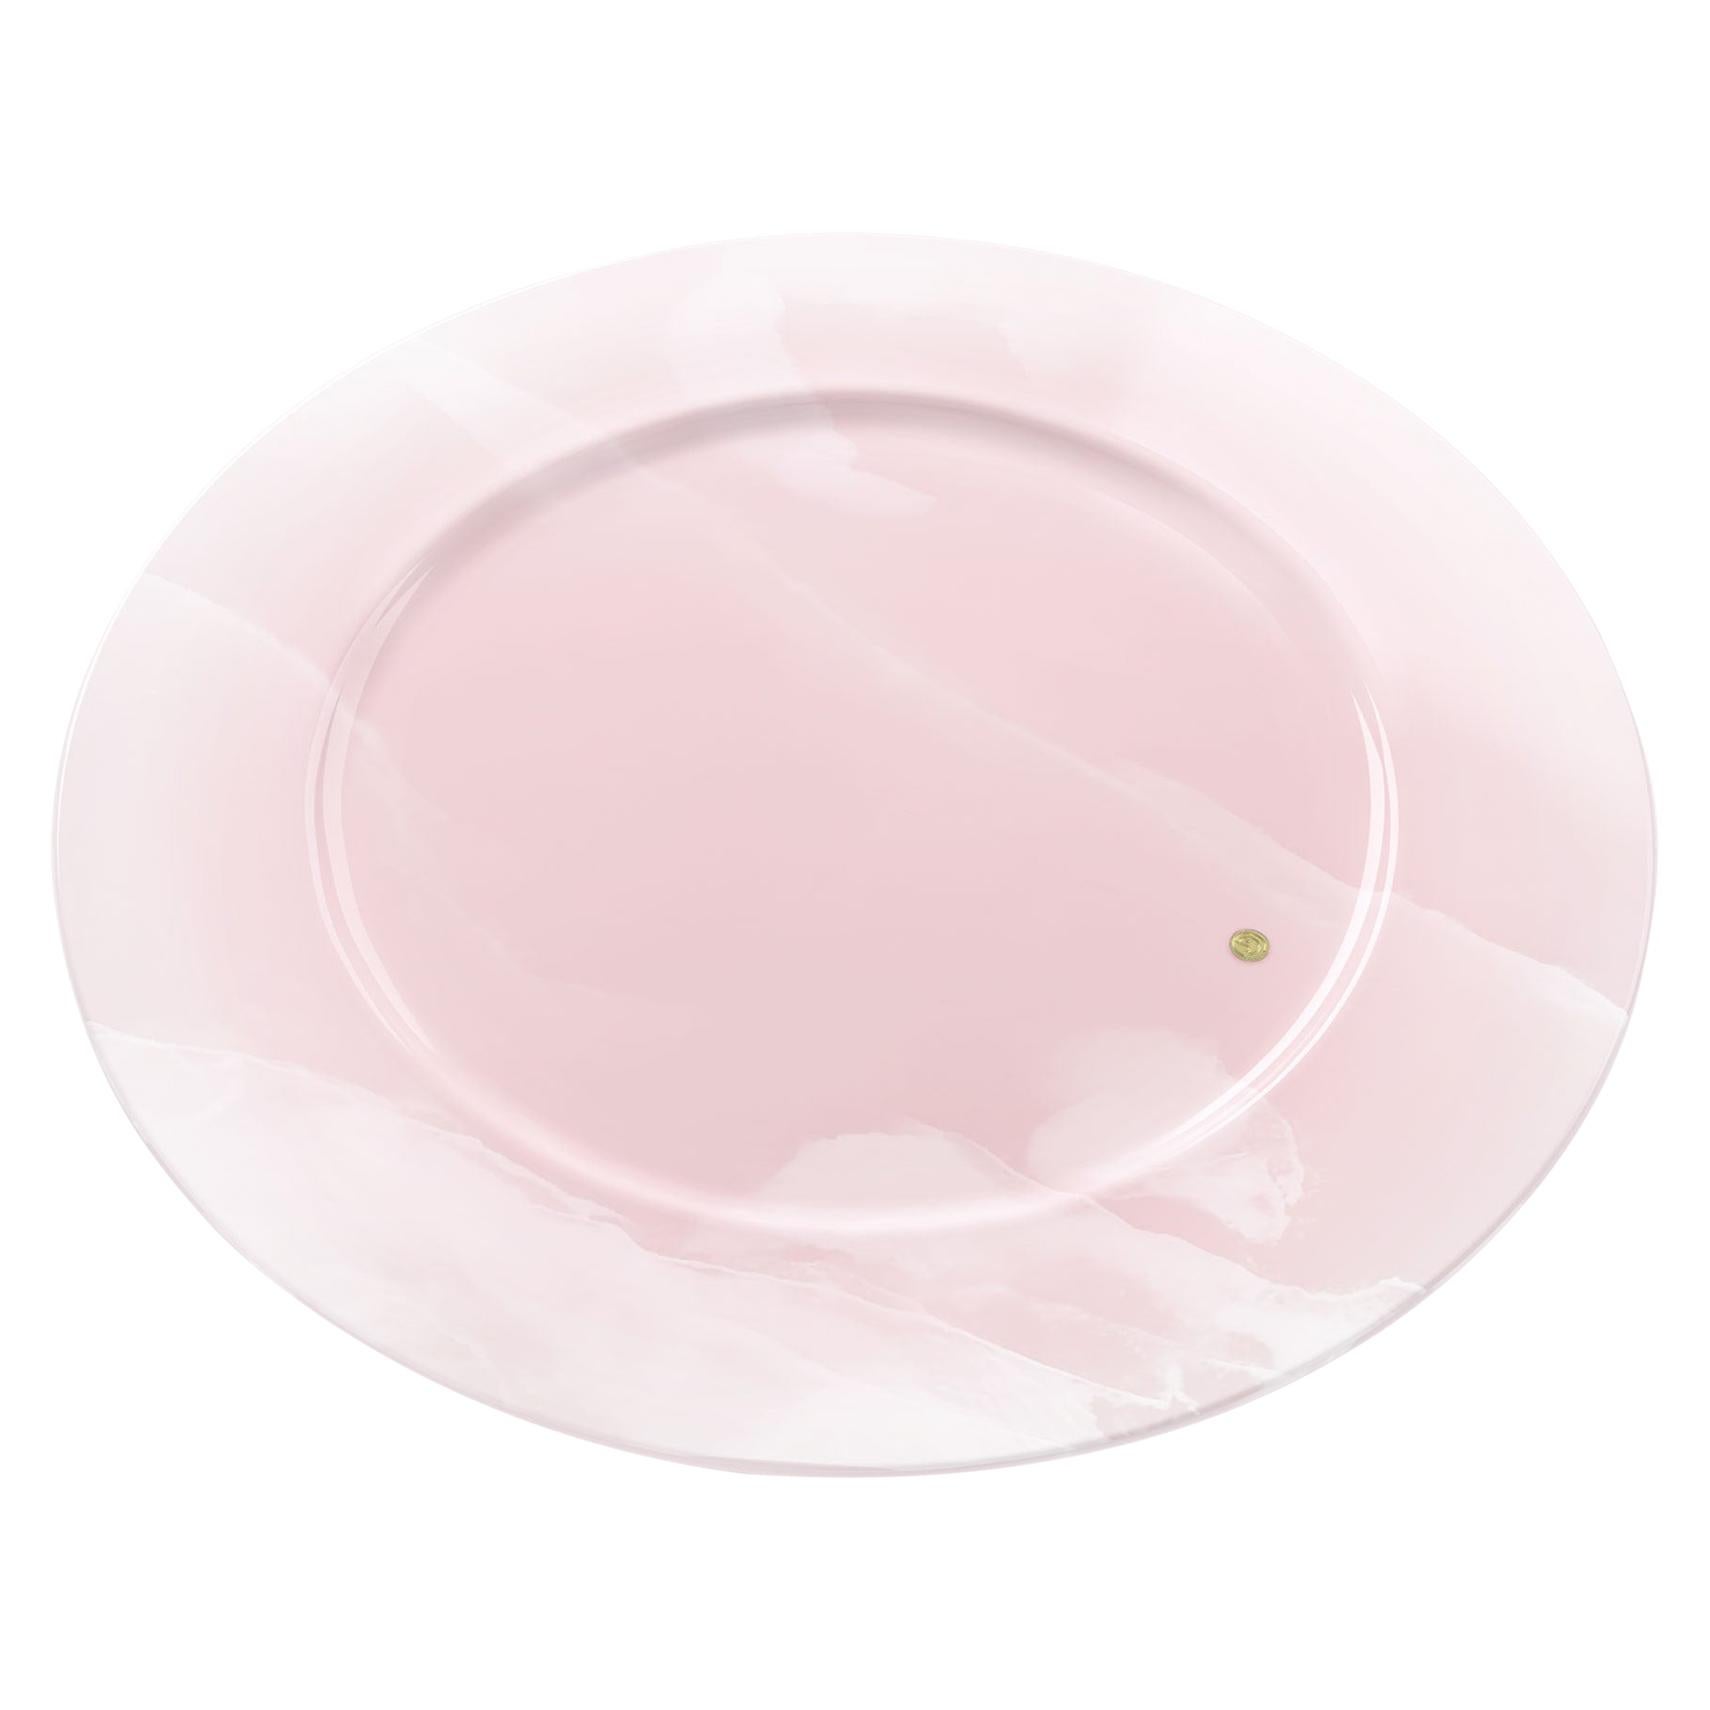 Servierplatten und -teller aus rosa Onyxmarmor, handgefertigtes Sammlerstück